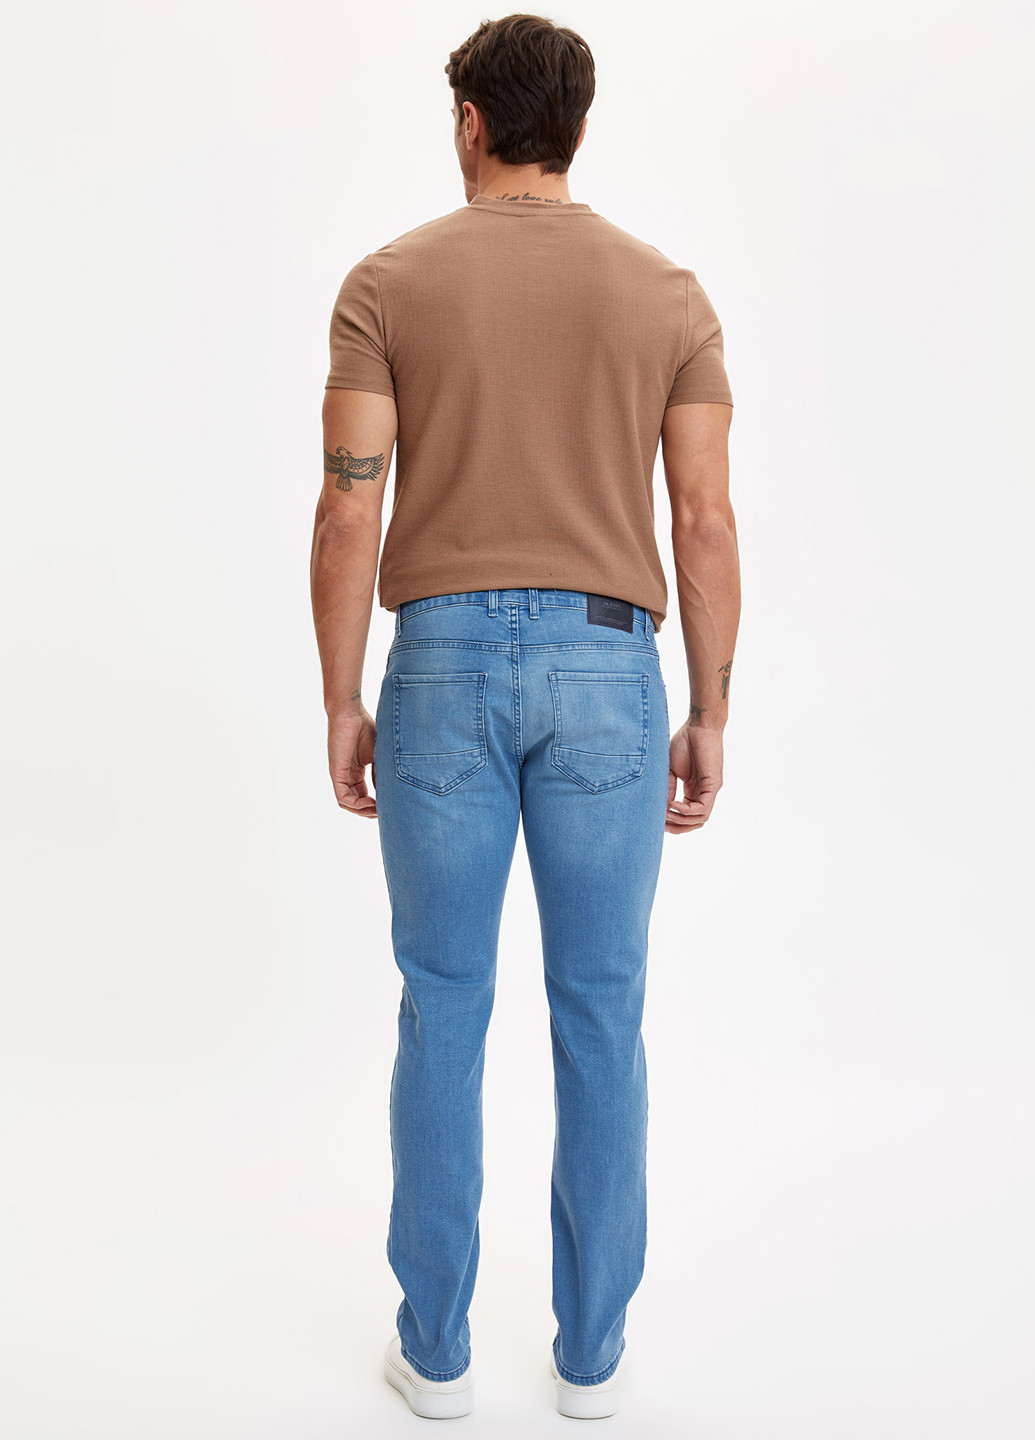 Голубые демисезонные прямые джинсы DeFacto